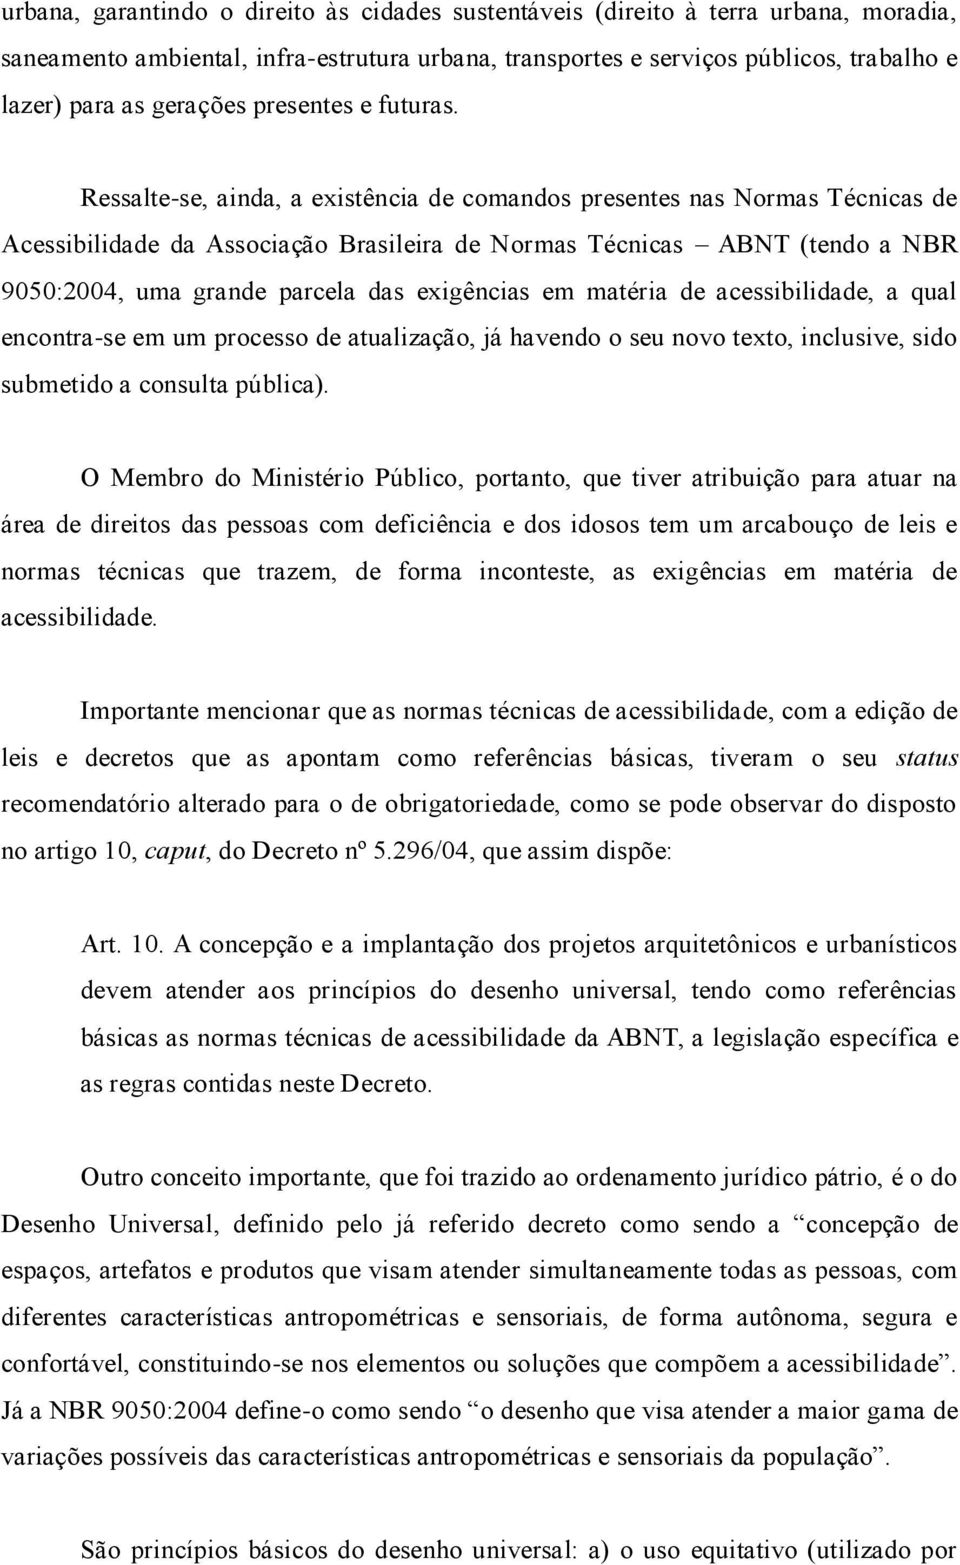 Ressalte-se, ainda, a existência de comandos presentes nas Normas Técnicas de Acessibilidade da Associação Brasileira de Normas Técnicas ABNT (tendo a NBR 9050:2004, uma grande parcela das exigências